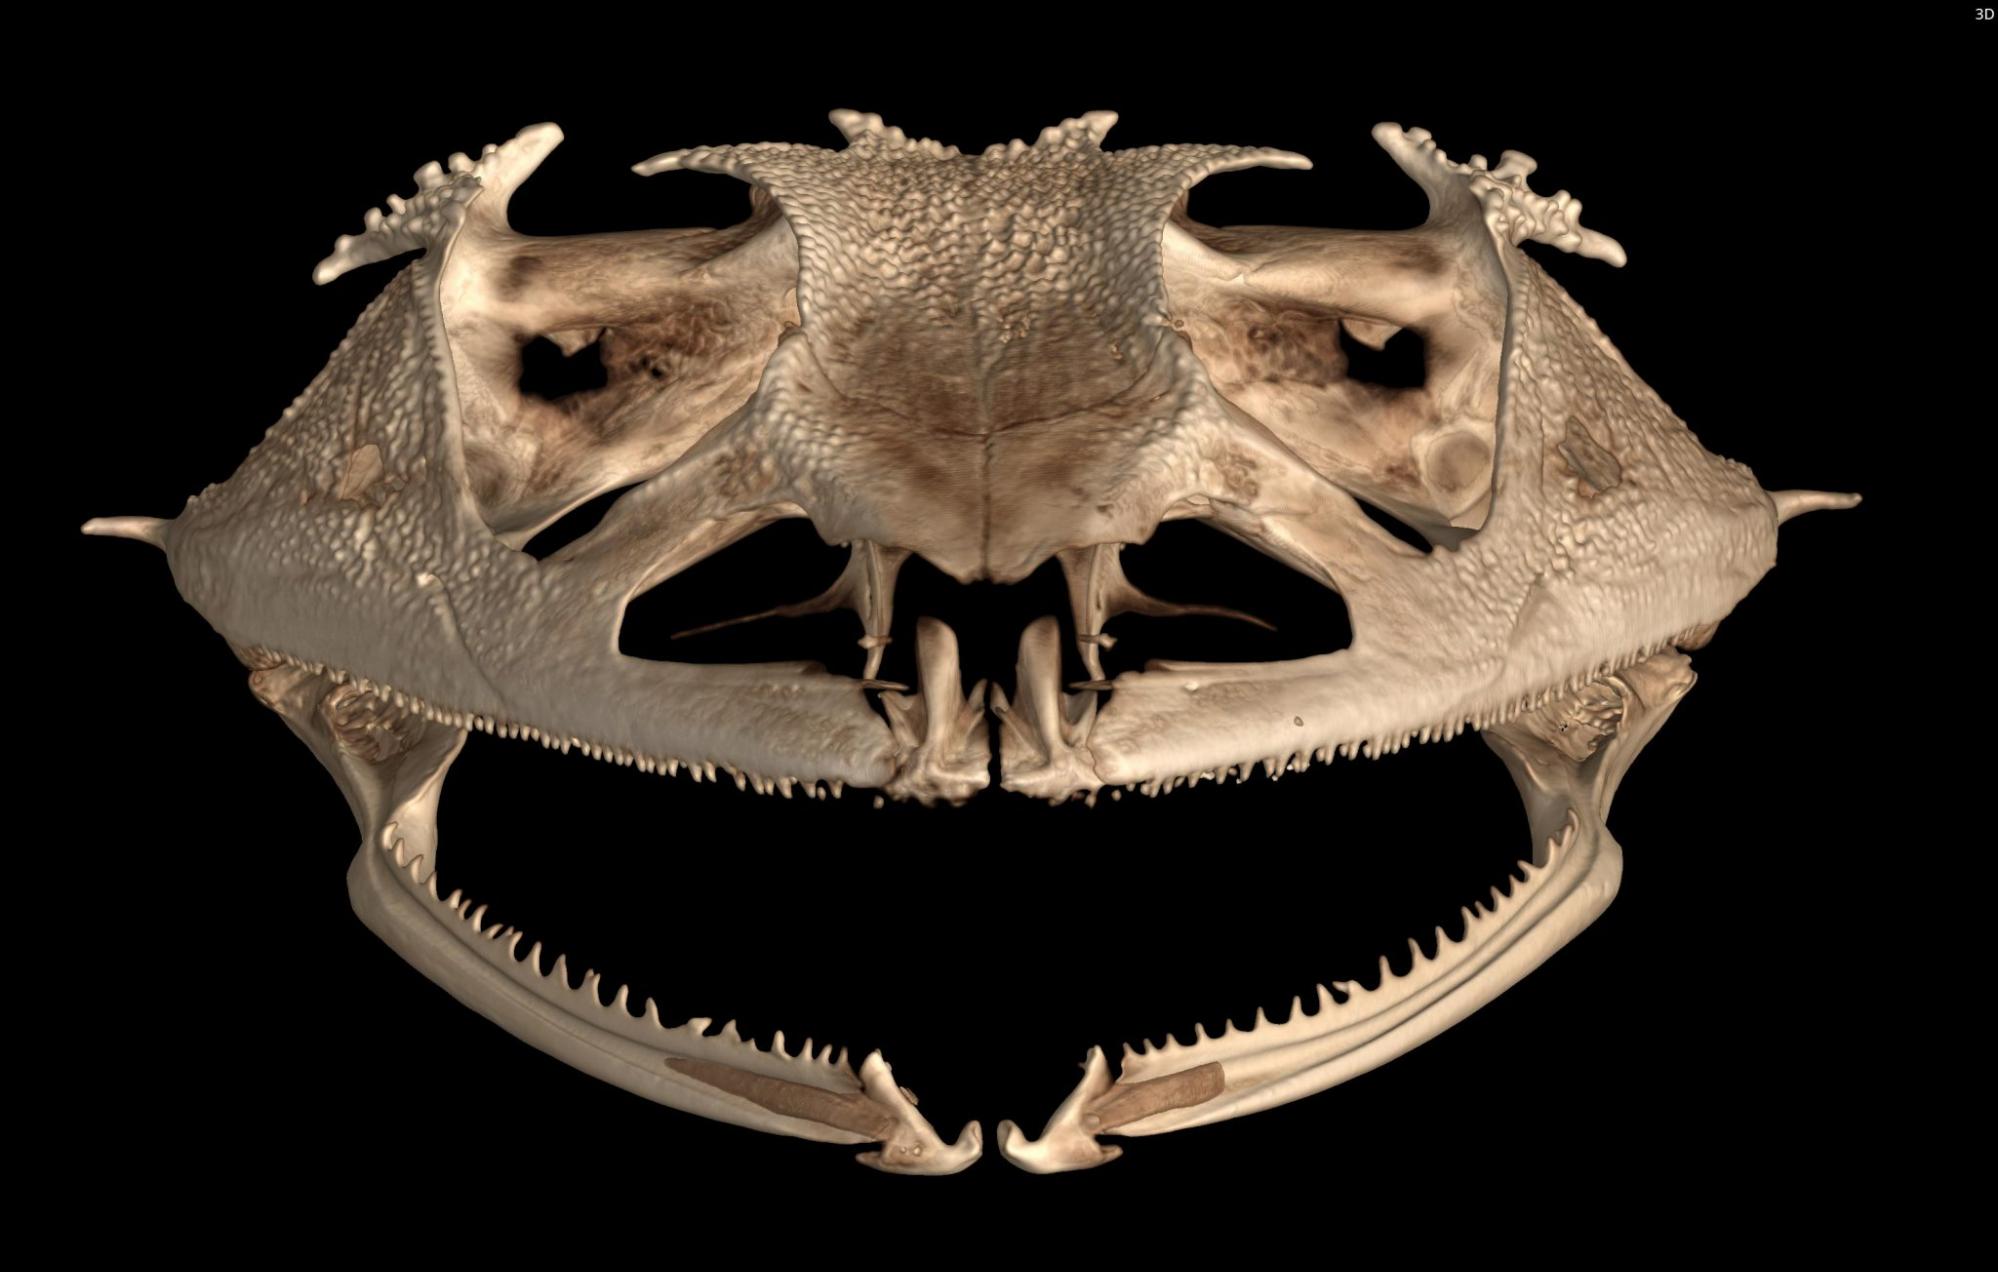 研究发现青蛙在进化过程中牙齿脱落超过20次 在几百万年重新进化出牙齿